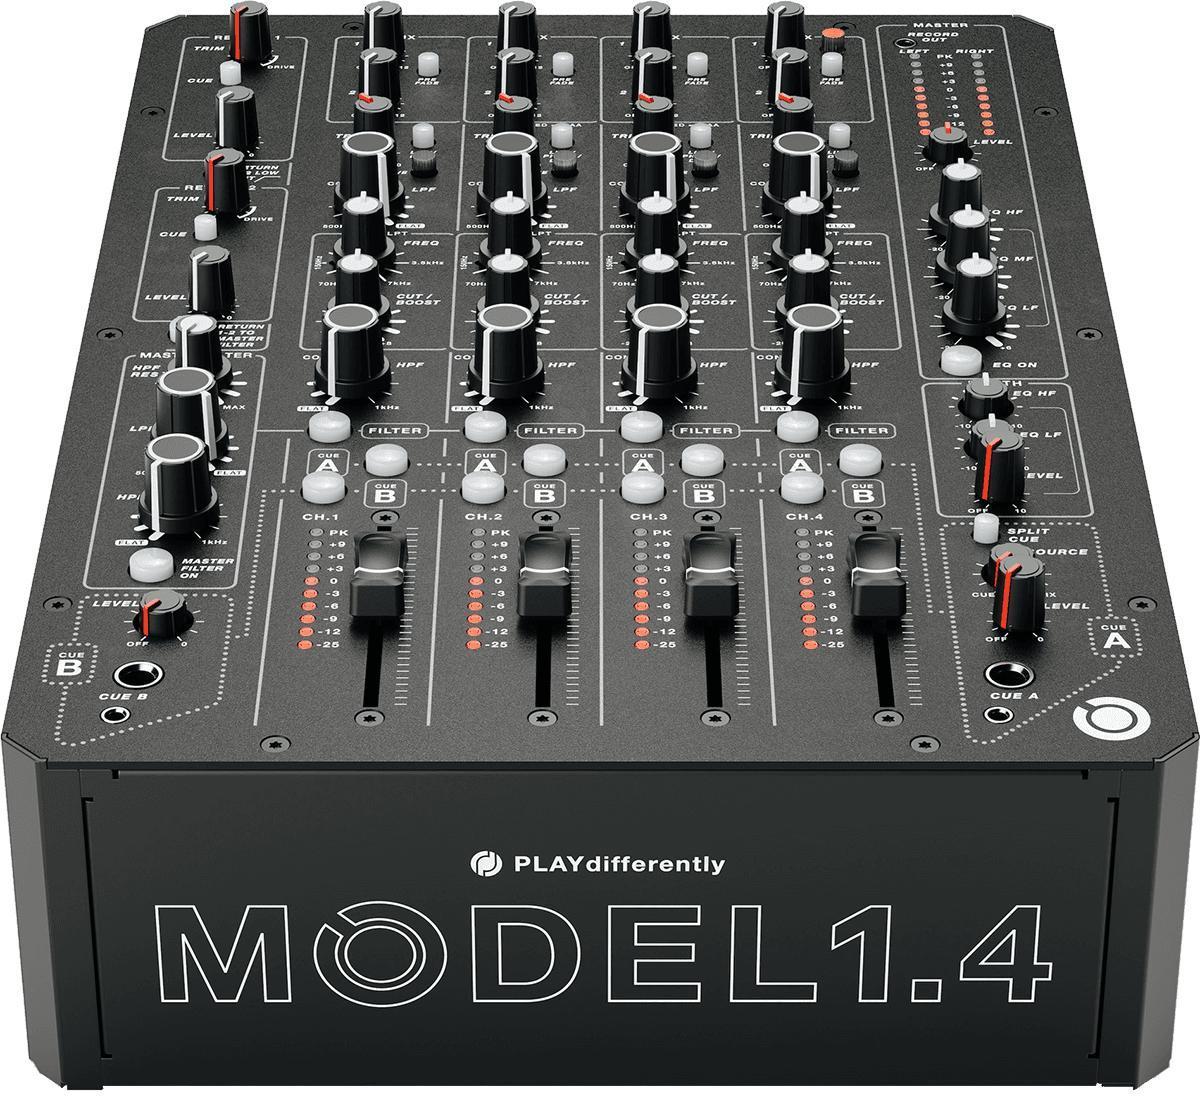 Dj mixer Allen & heath Model 1.4